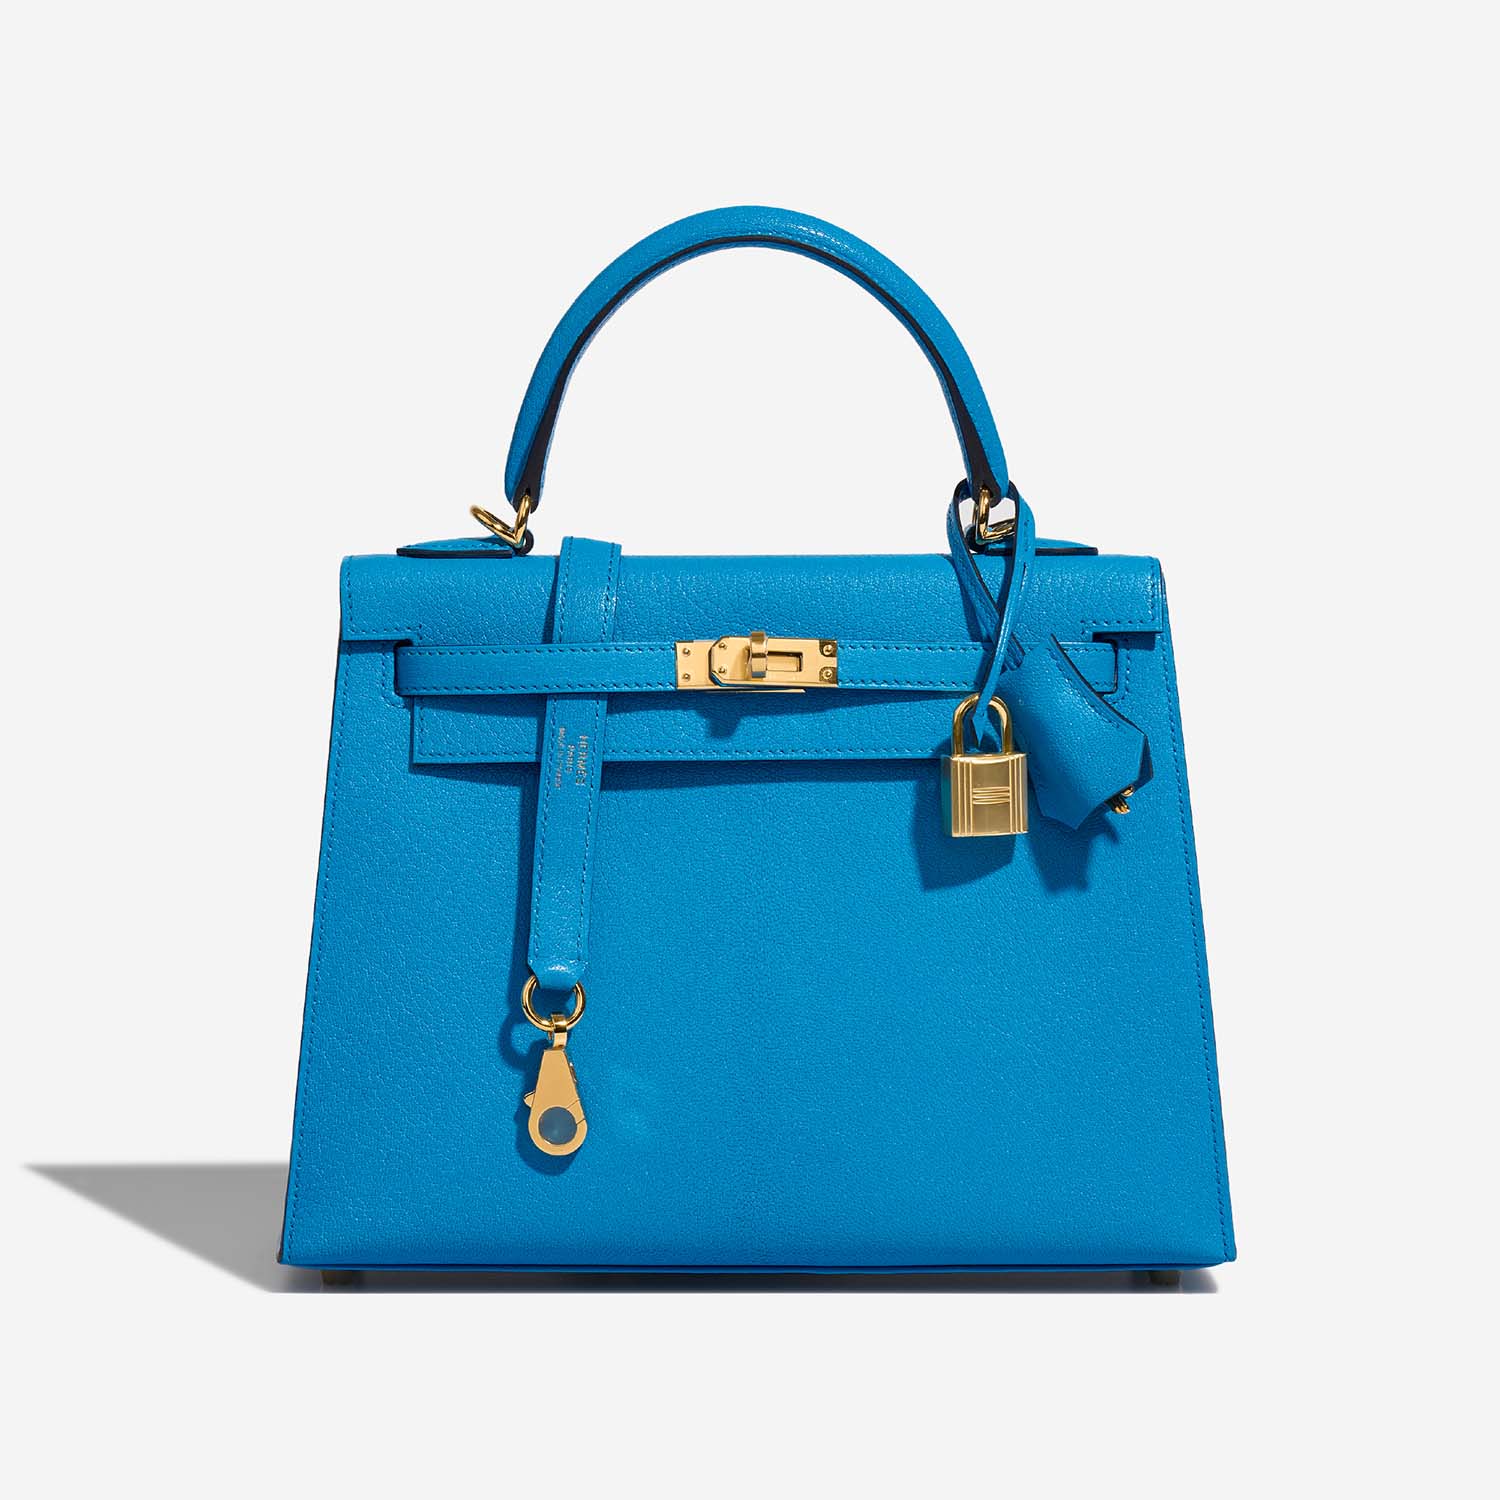 Hermès Kelly 25 BlueFrida 2F S | Verkaufen Sie Ihre Designertasche auf Saclab.com